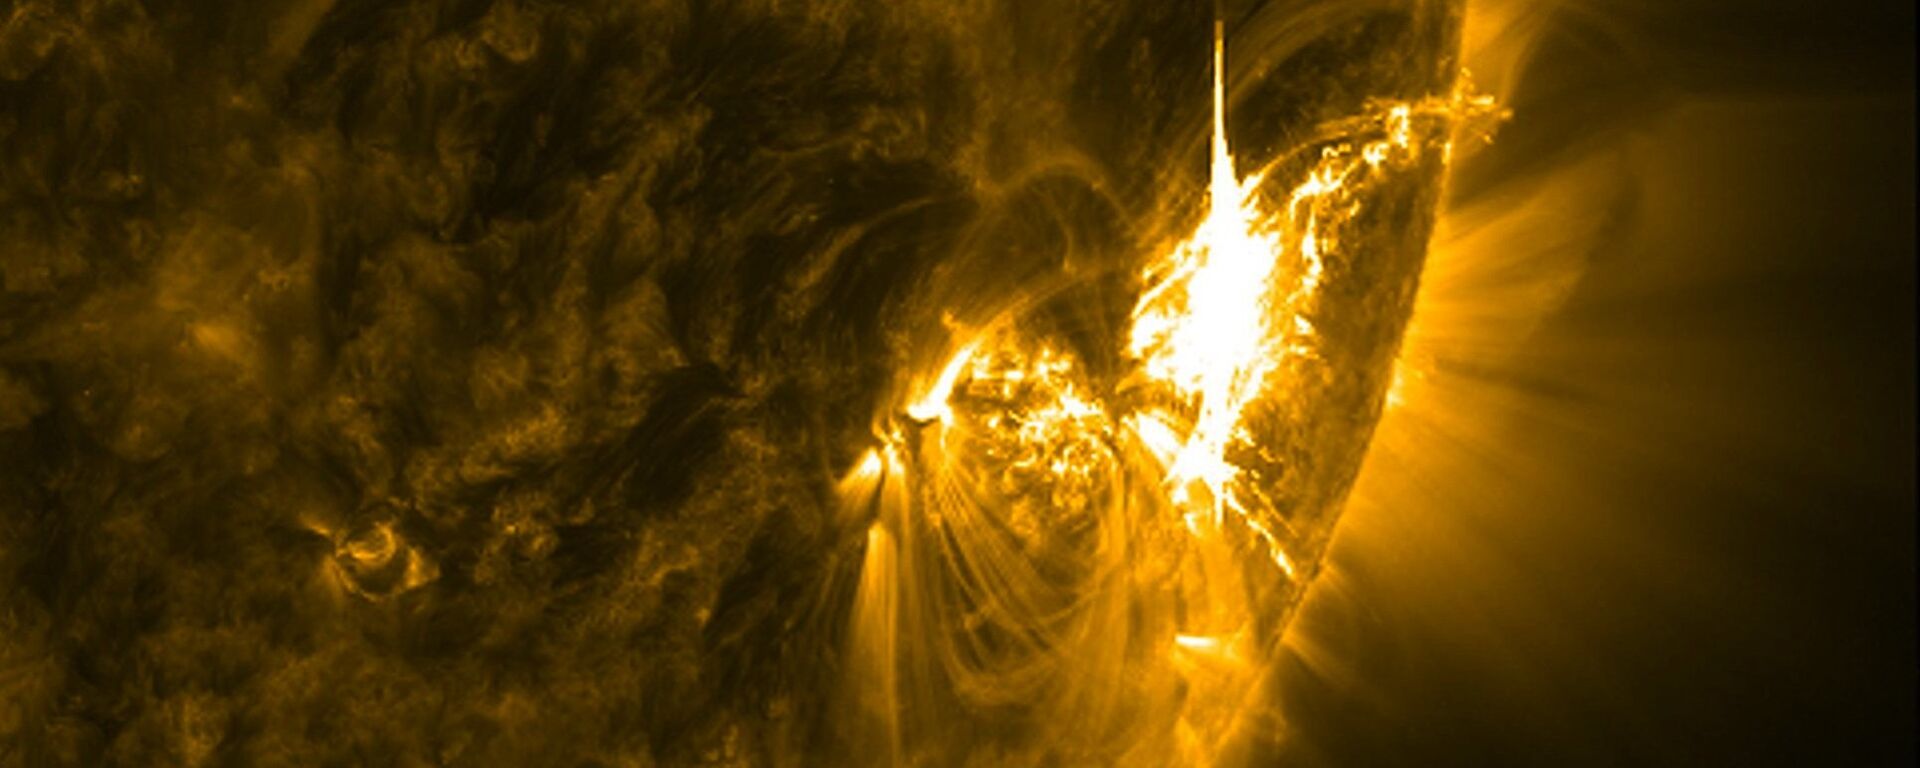 გეომაგნიტური ქარიშხალი მზეზე - Sputnik საქართველო, 1920, 14.11.2018